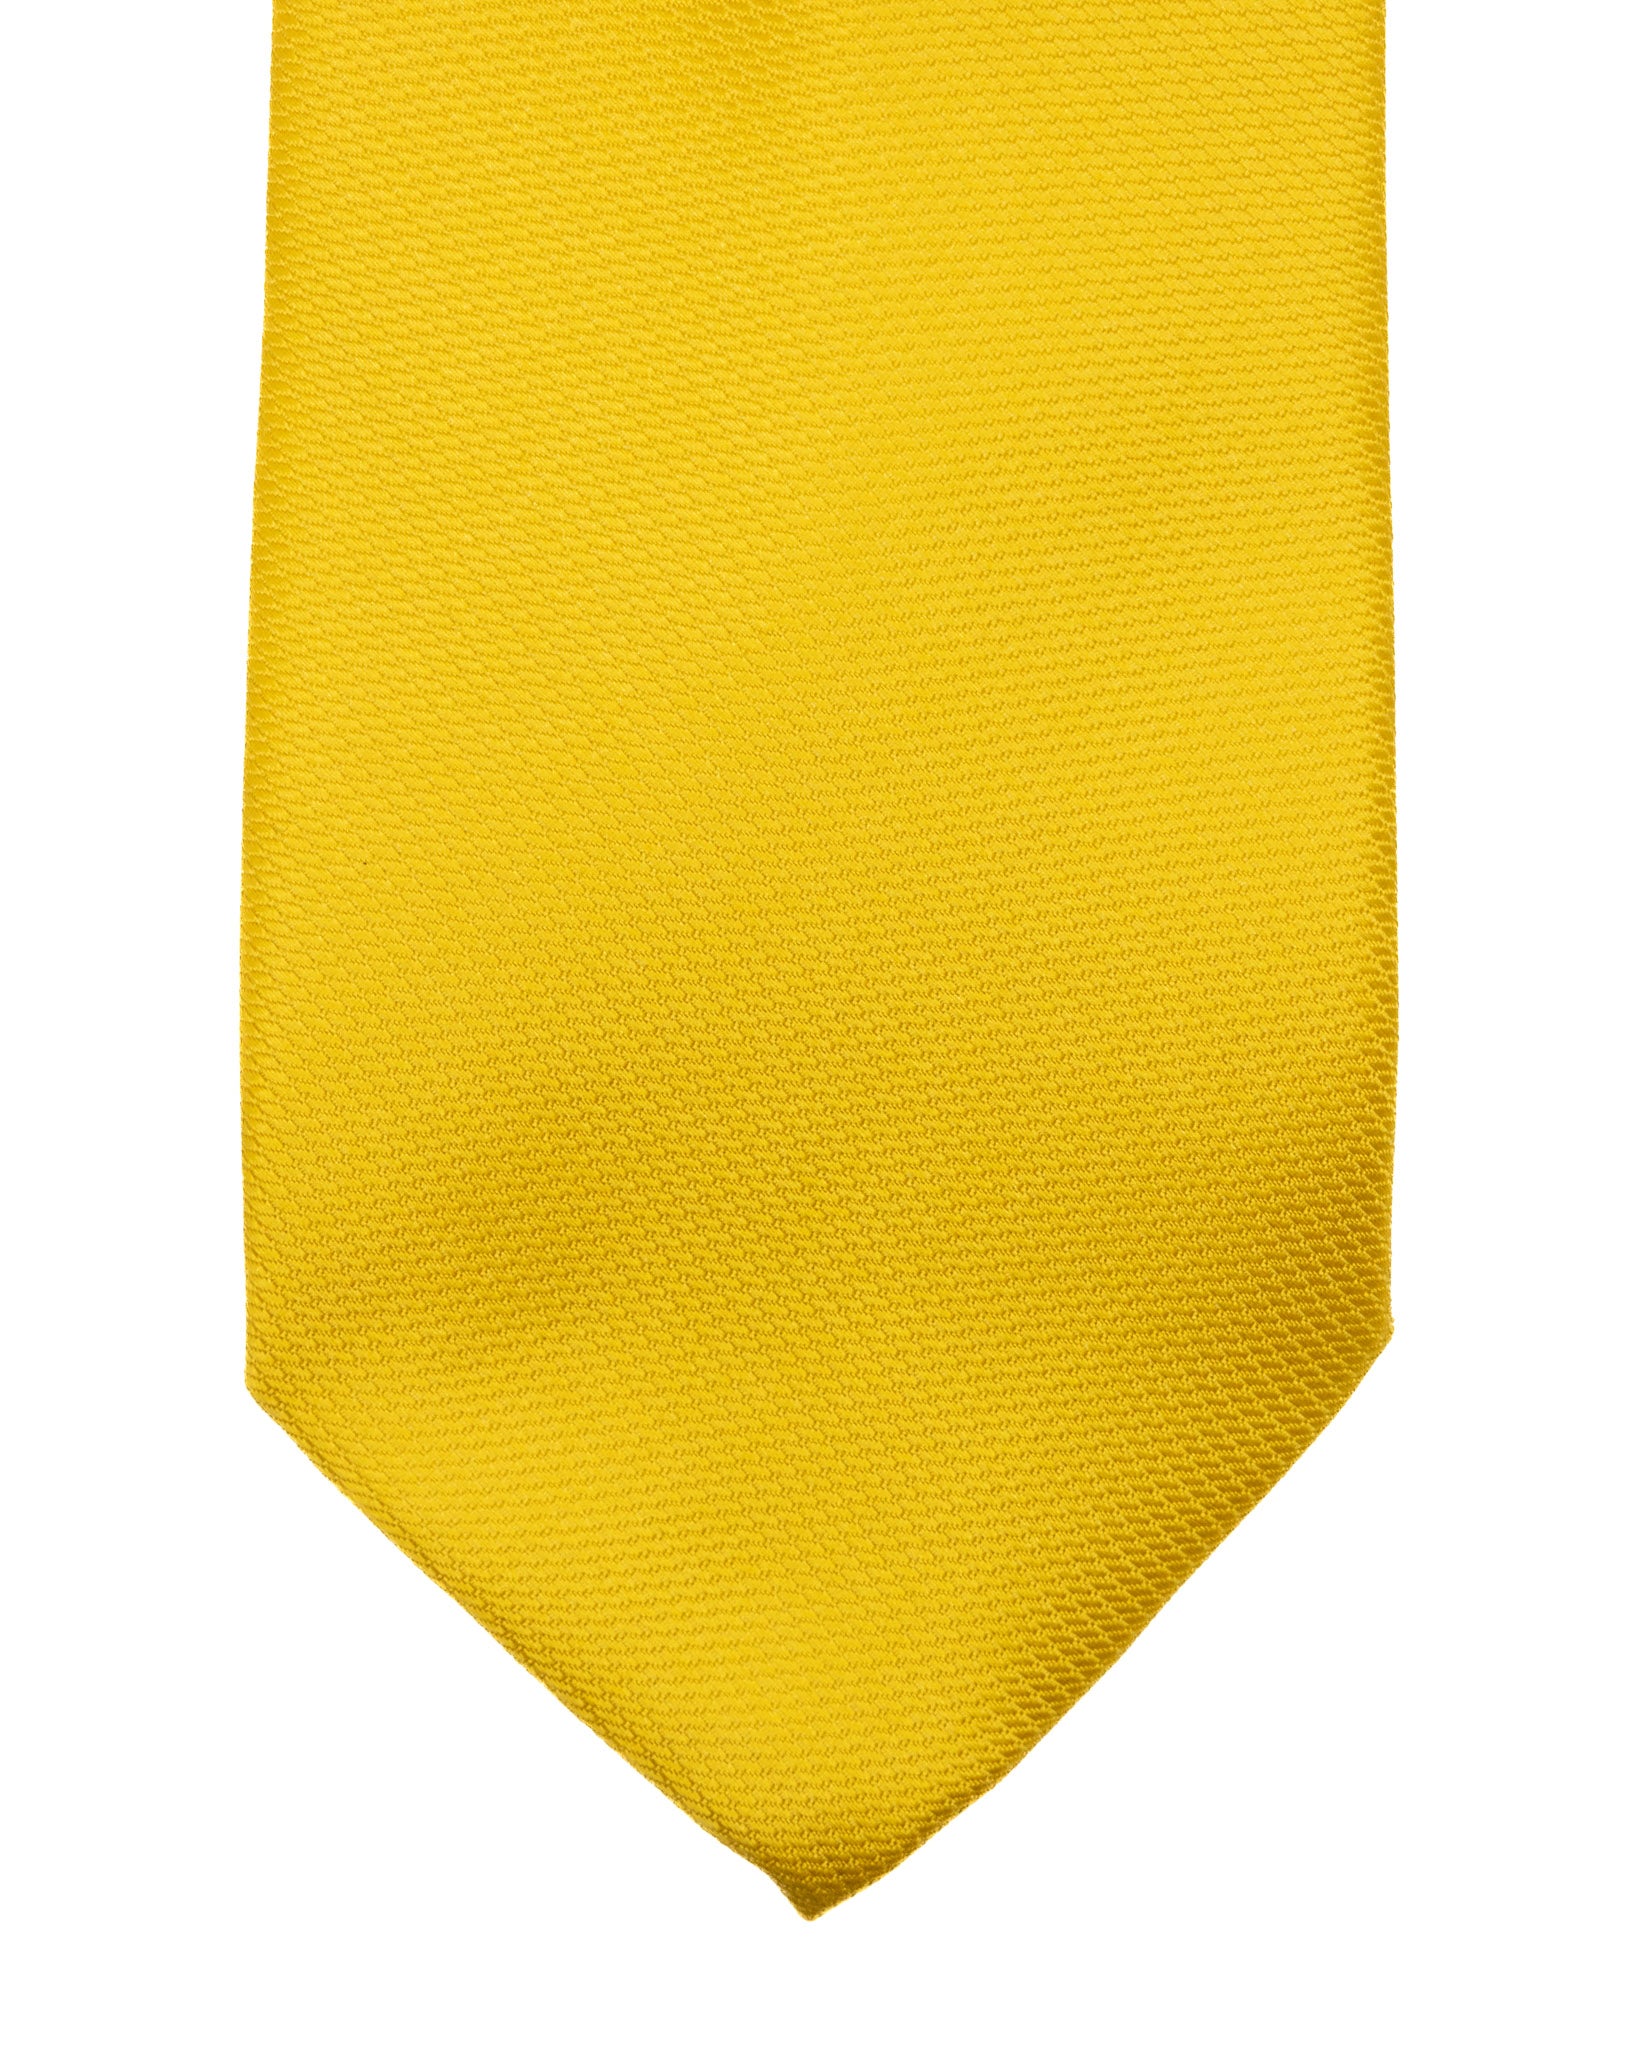 Cravatta - in seta armaturata senape